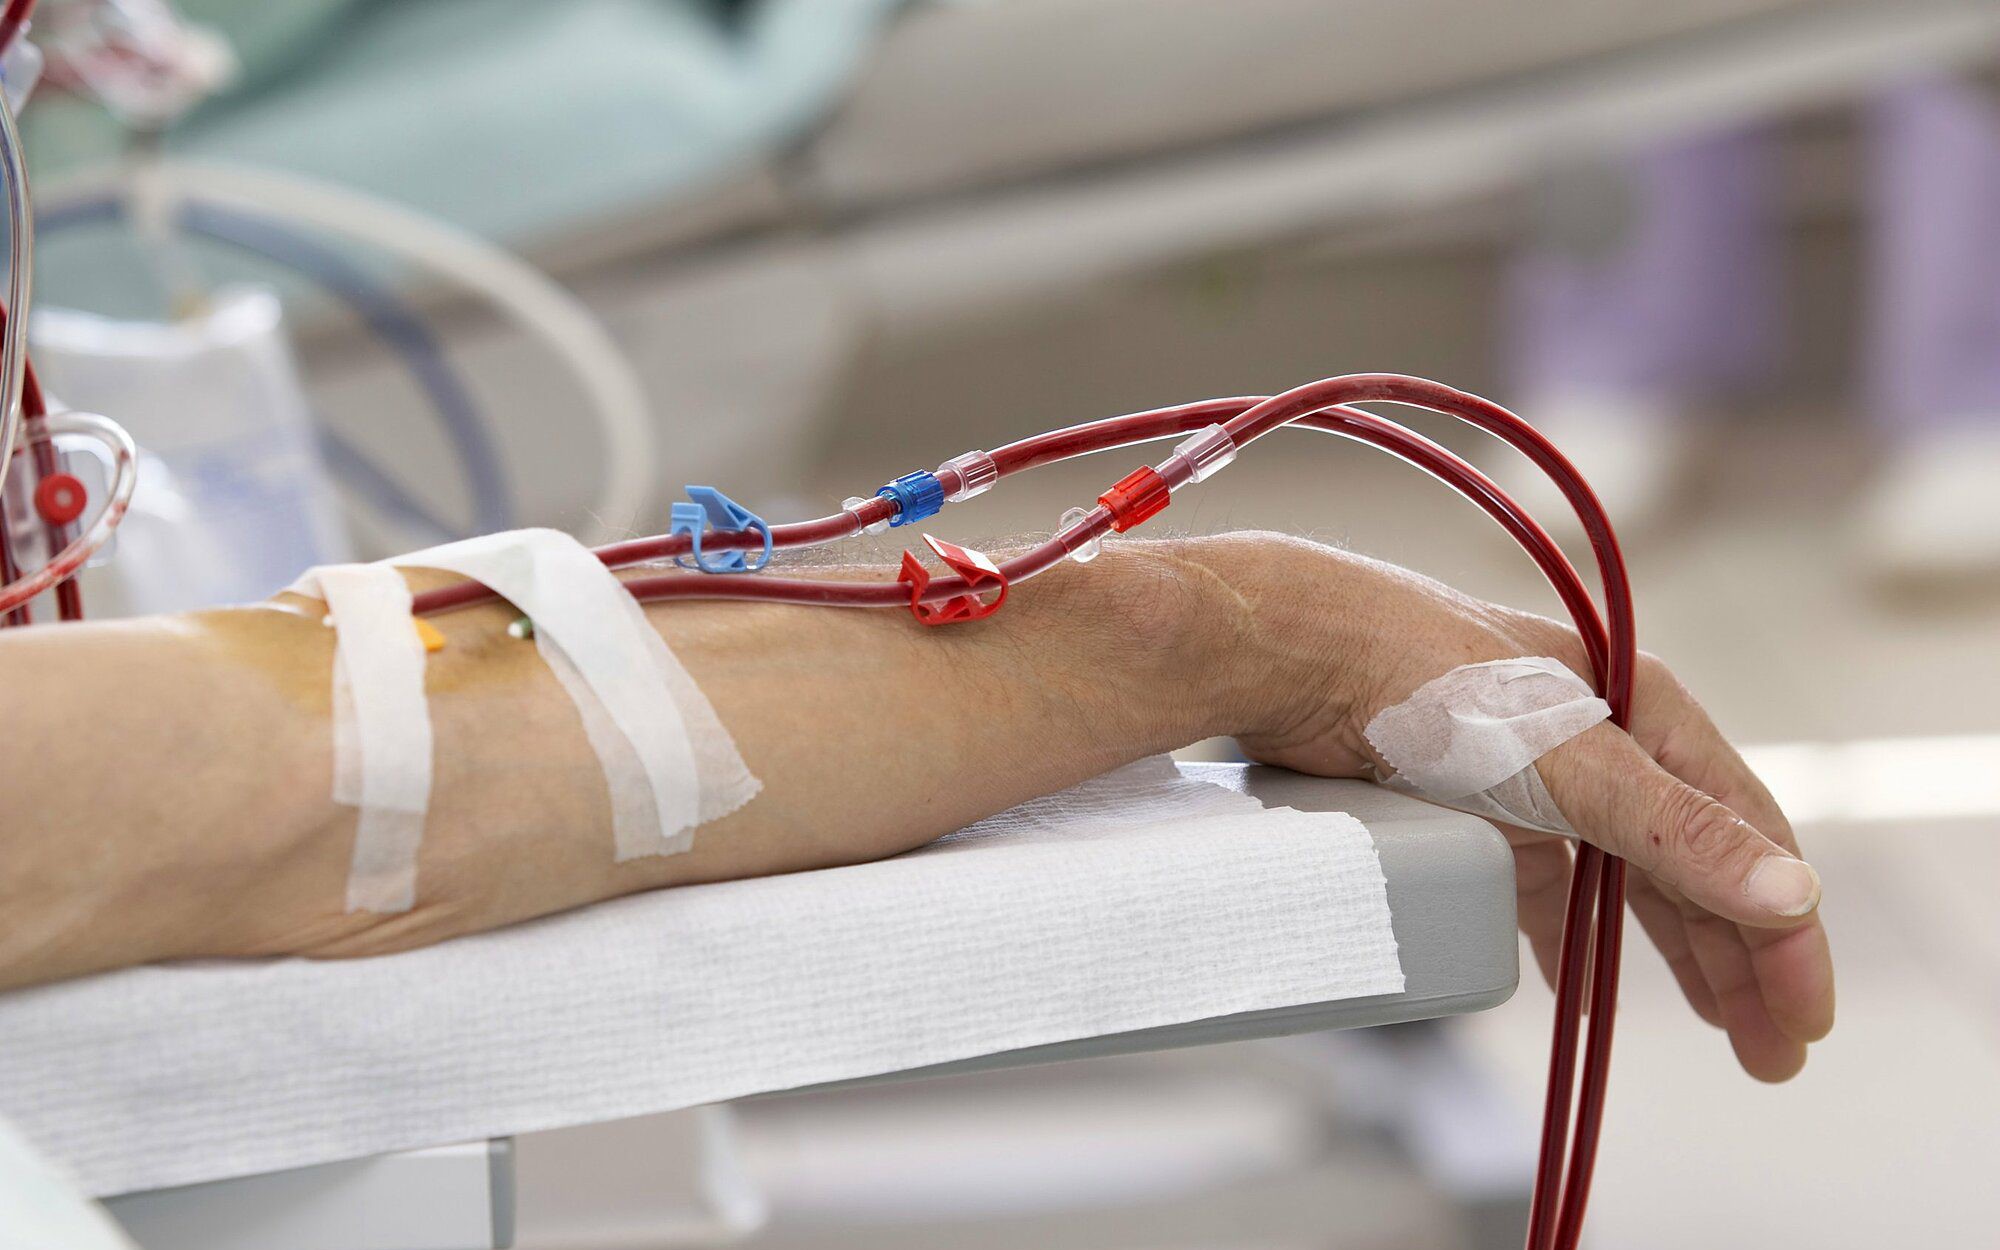 Nâng cao chuyên môn hiệu chỉnh liều thuốc trên bệnh nhân lọc máu